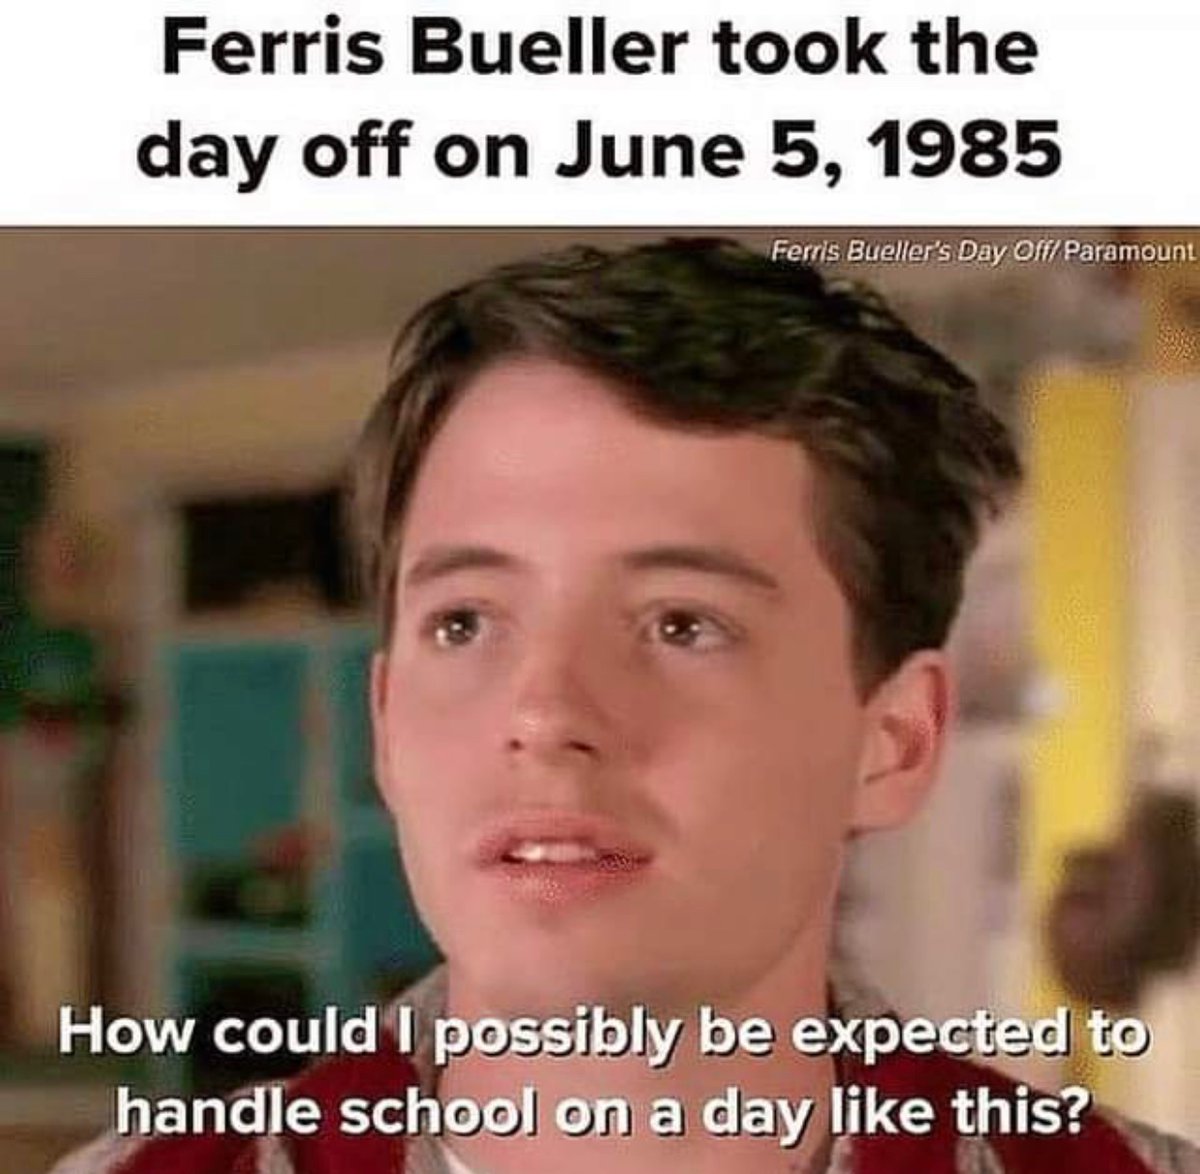 #FerrisBuellersDayOff
#SaveFerris